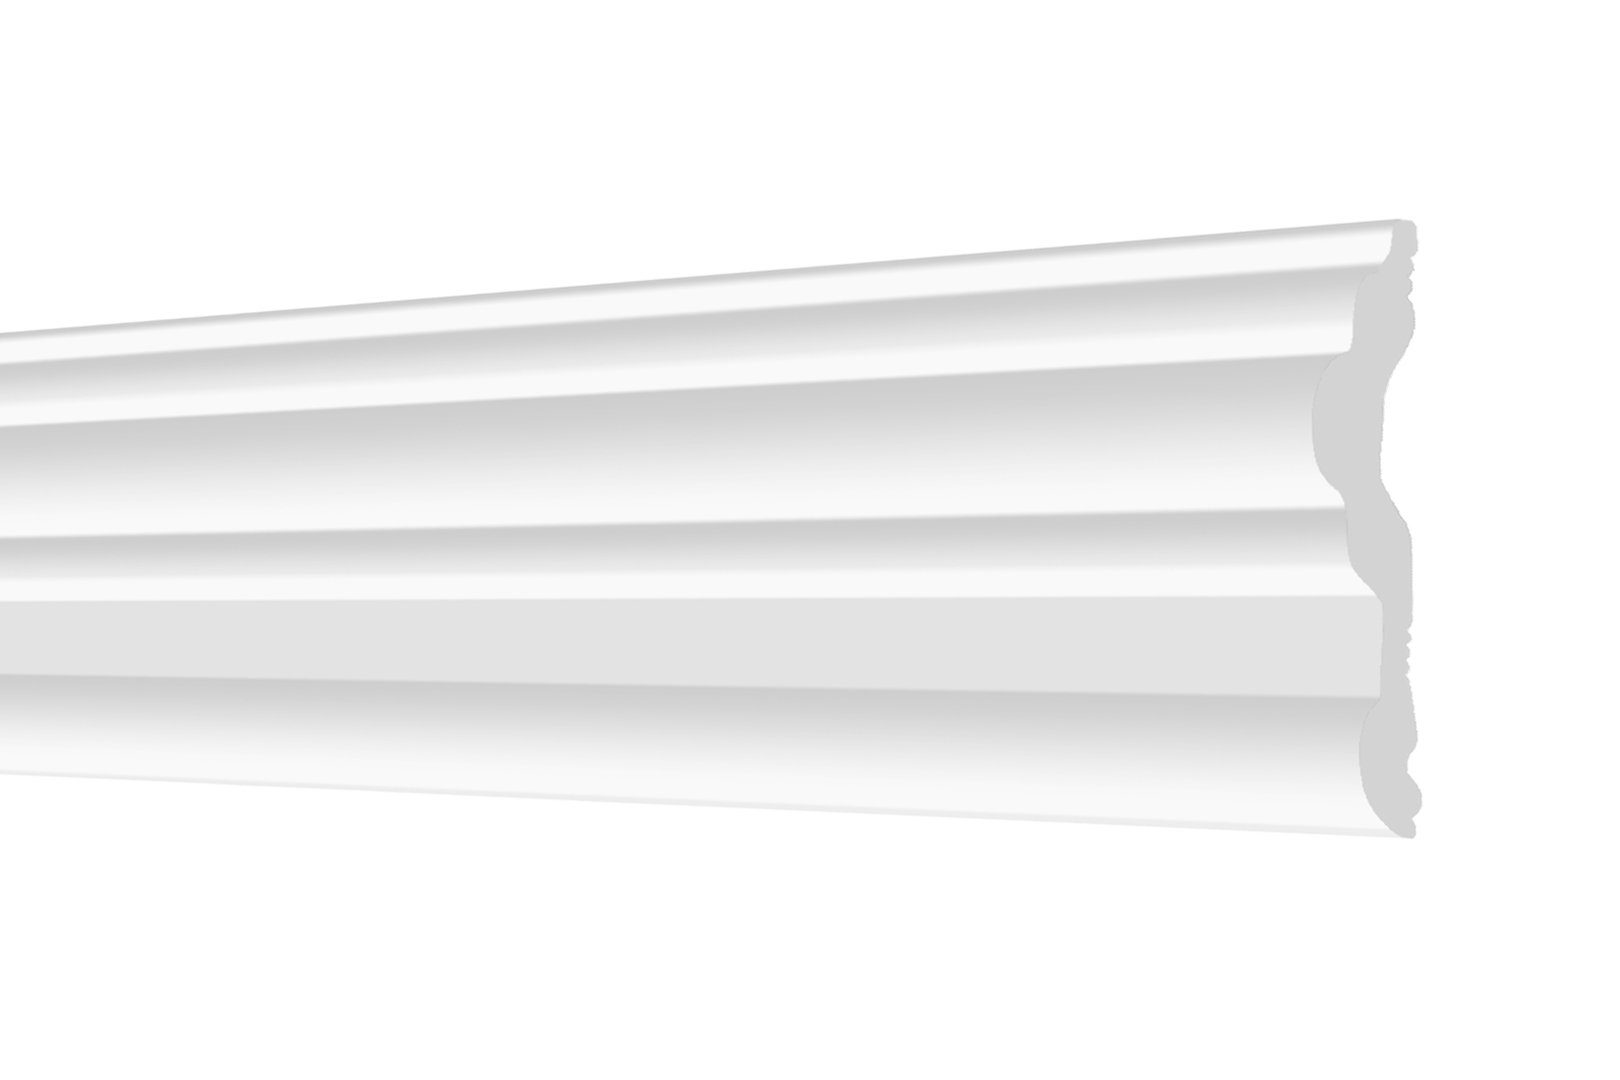 Hexim Zierleiste Wandleiste glatt FG7, 20 Meter / 10 Leisten, Wandleisten aus Styropor (XPS) - Hochwertige Stuckleisten leicht & robust im modernen Design, Styroporleiste Flachleisten - 20 Meter / 10 Stück FG7 / 80x15mm